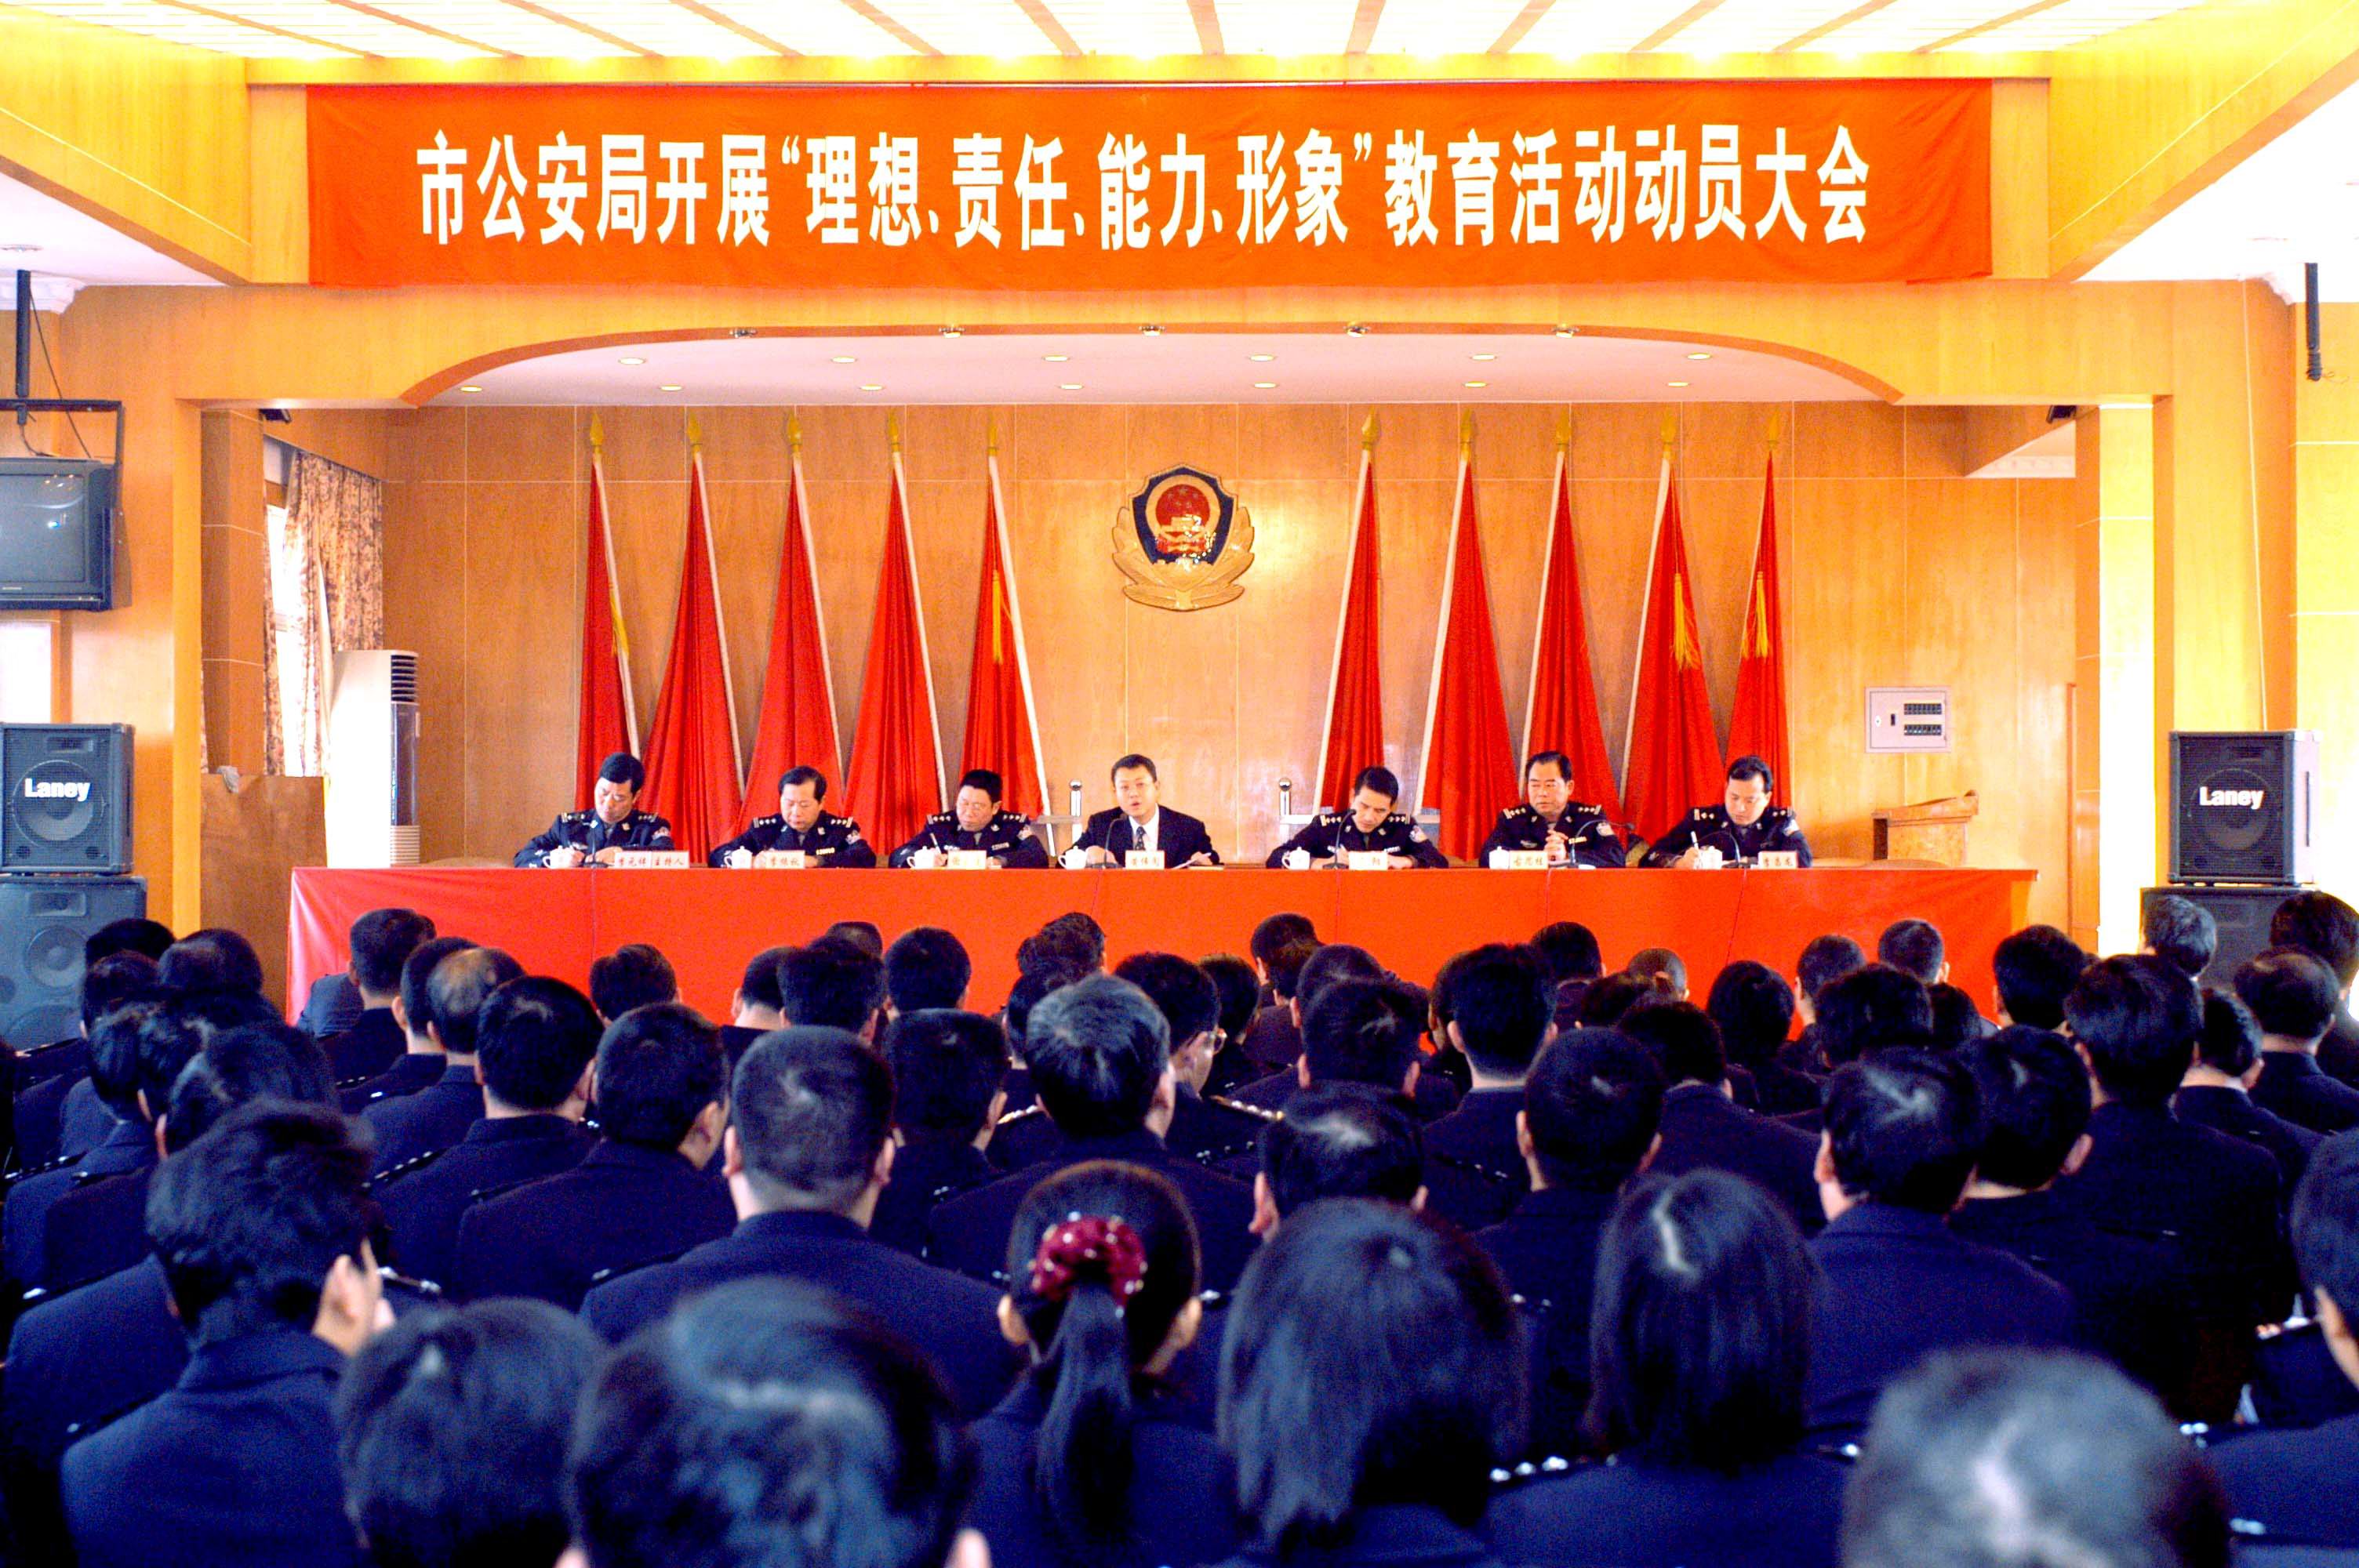 广东:梅州市公安局开展理想、责任、能力、形